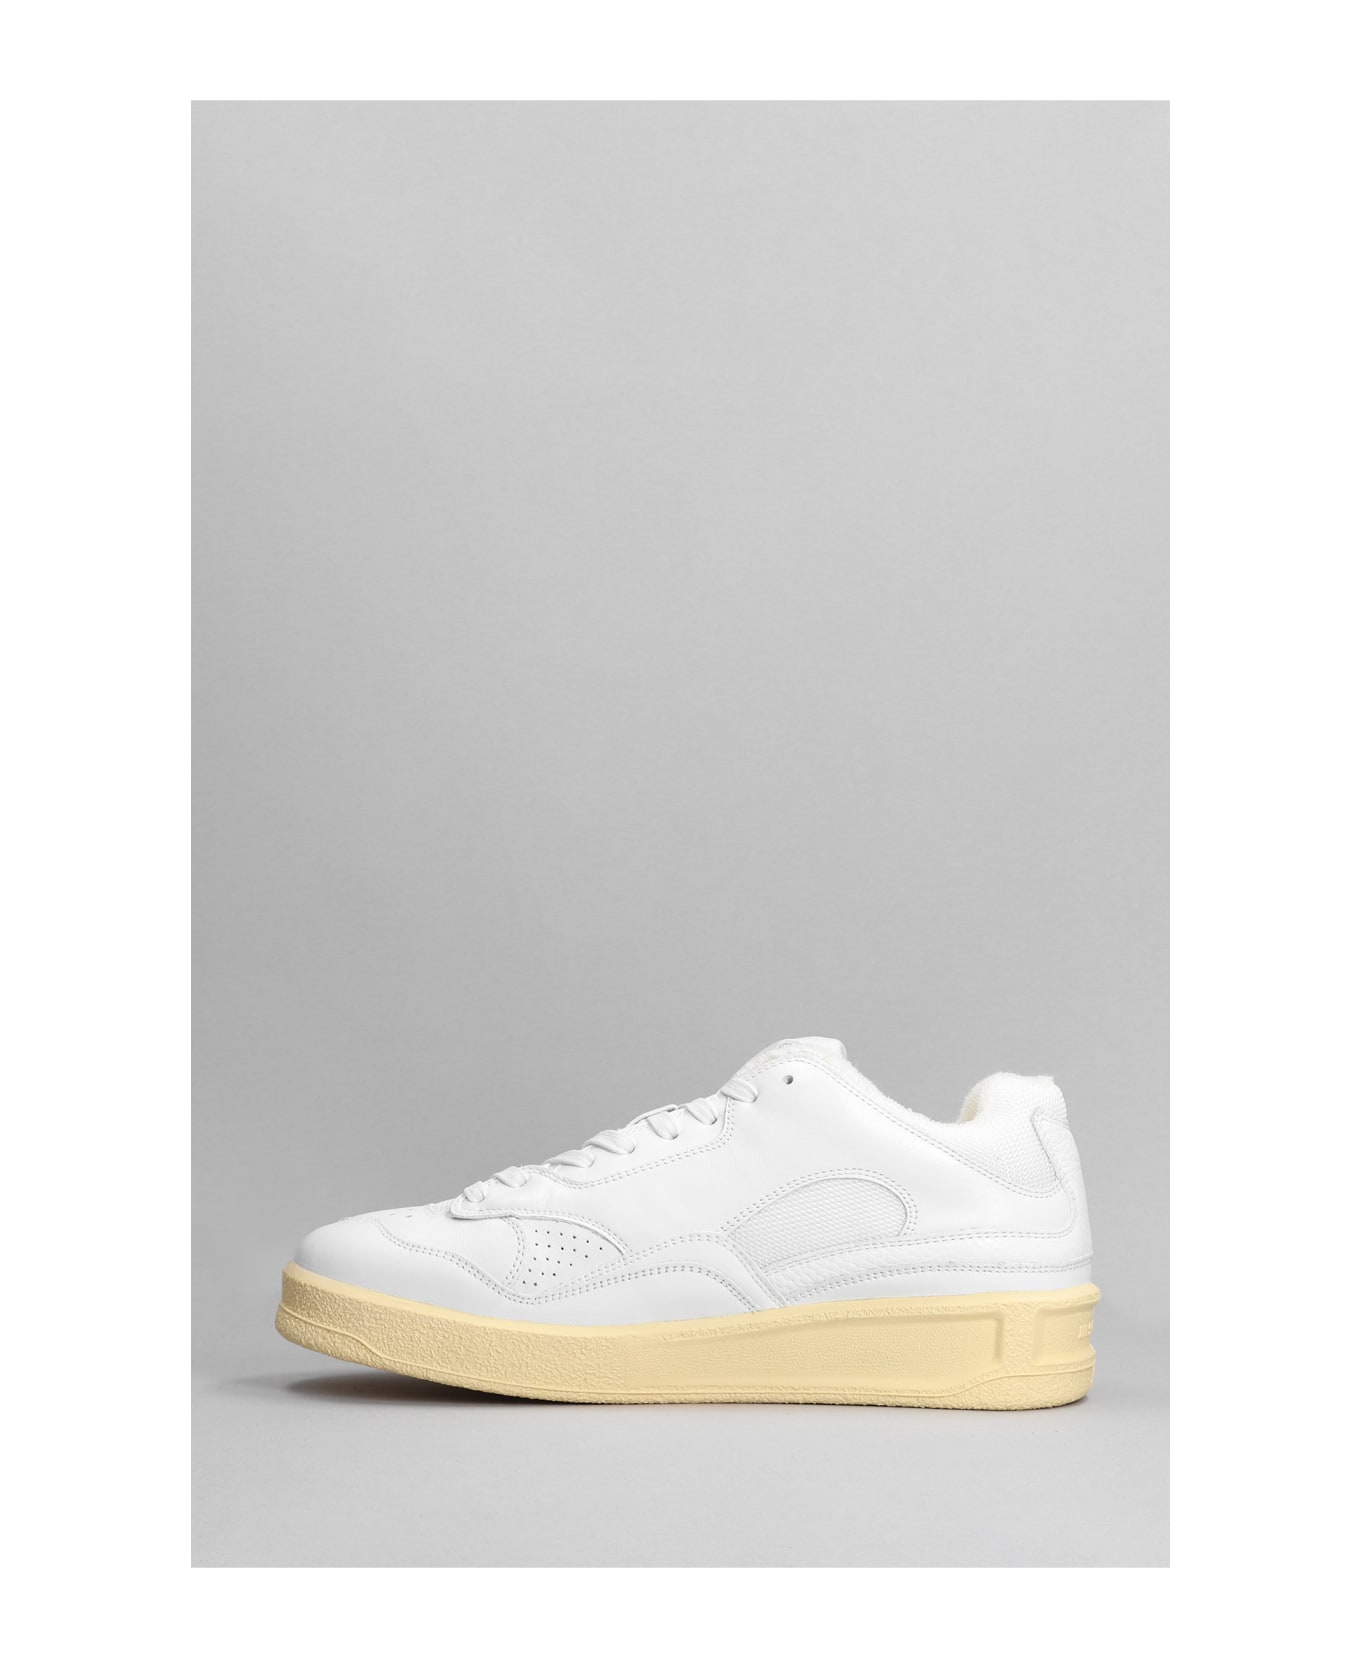 Jil Sander White Leather Sneakers - White スニーカー